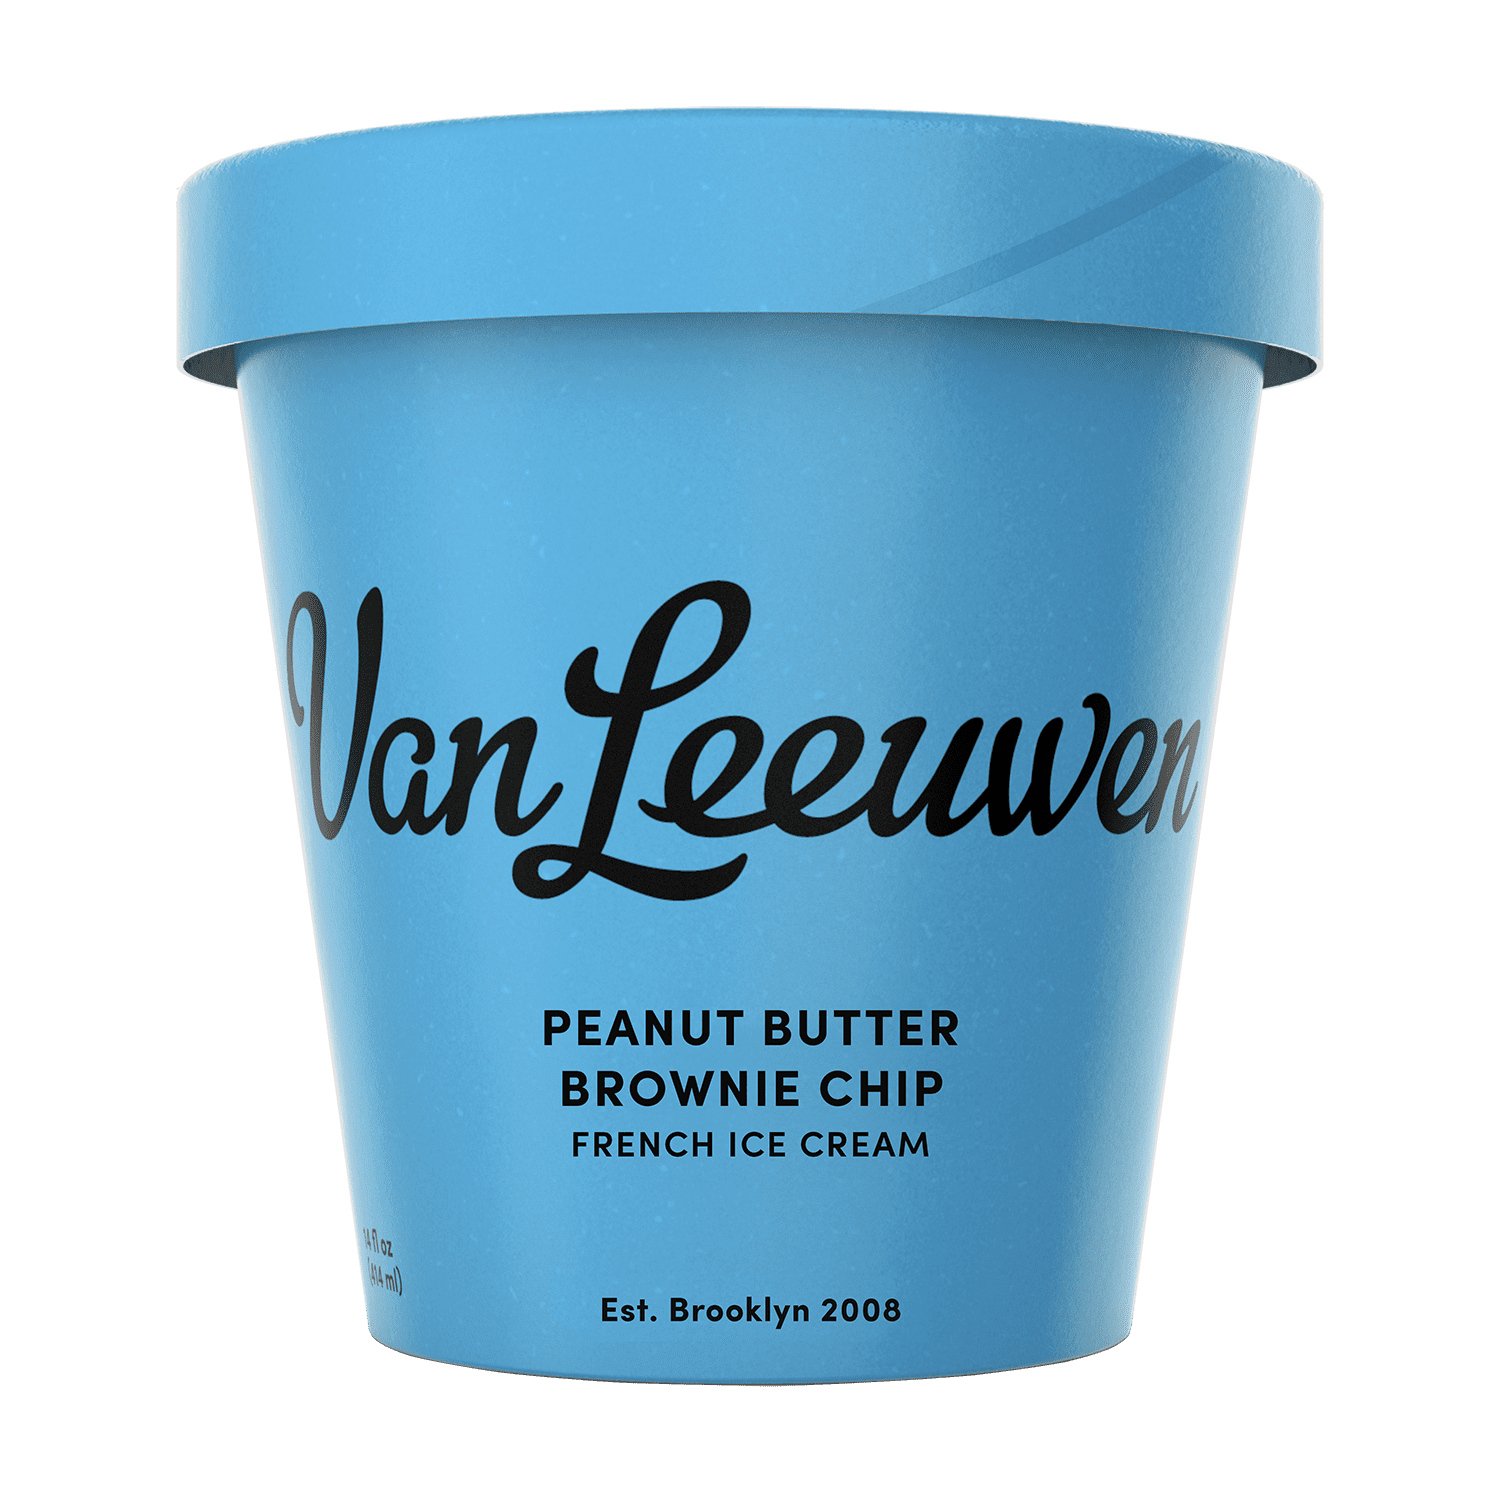 Van Leeuwen Peanut Butter Brownie Chip Ice Cream, 14 oz